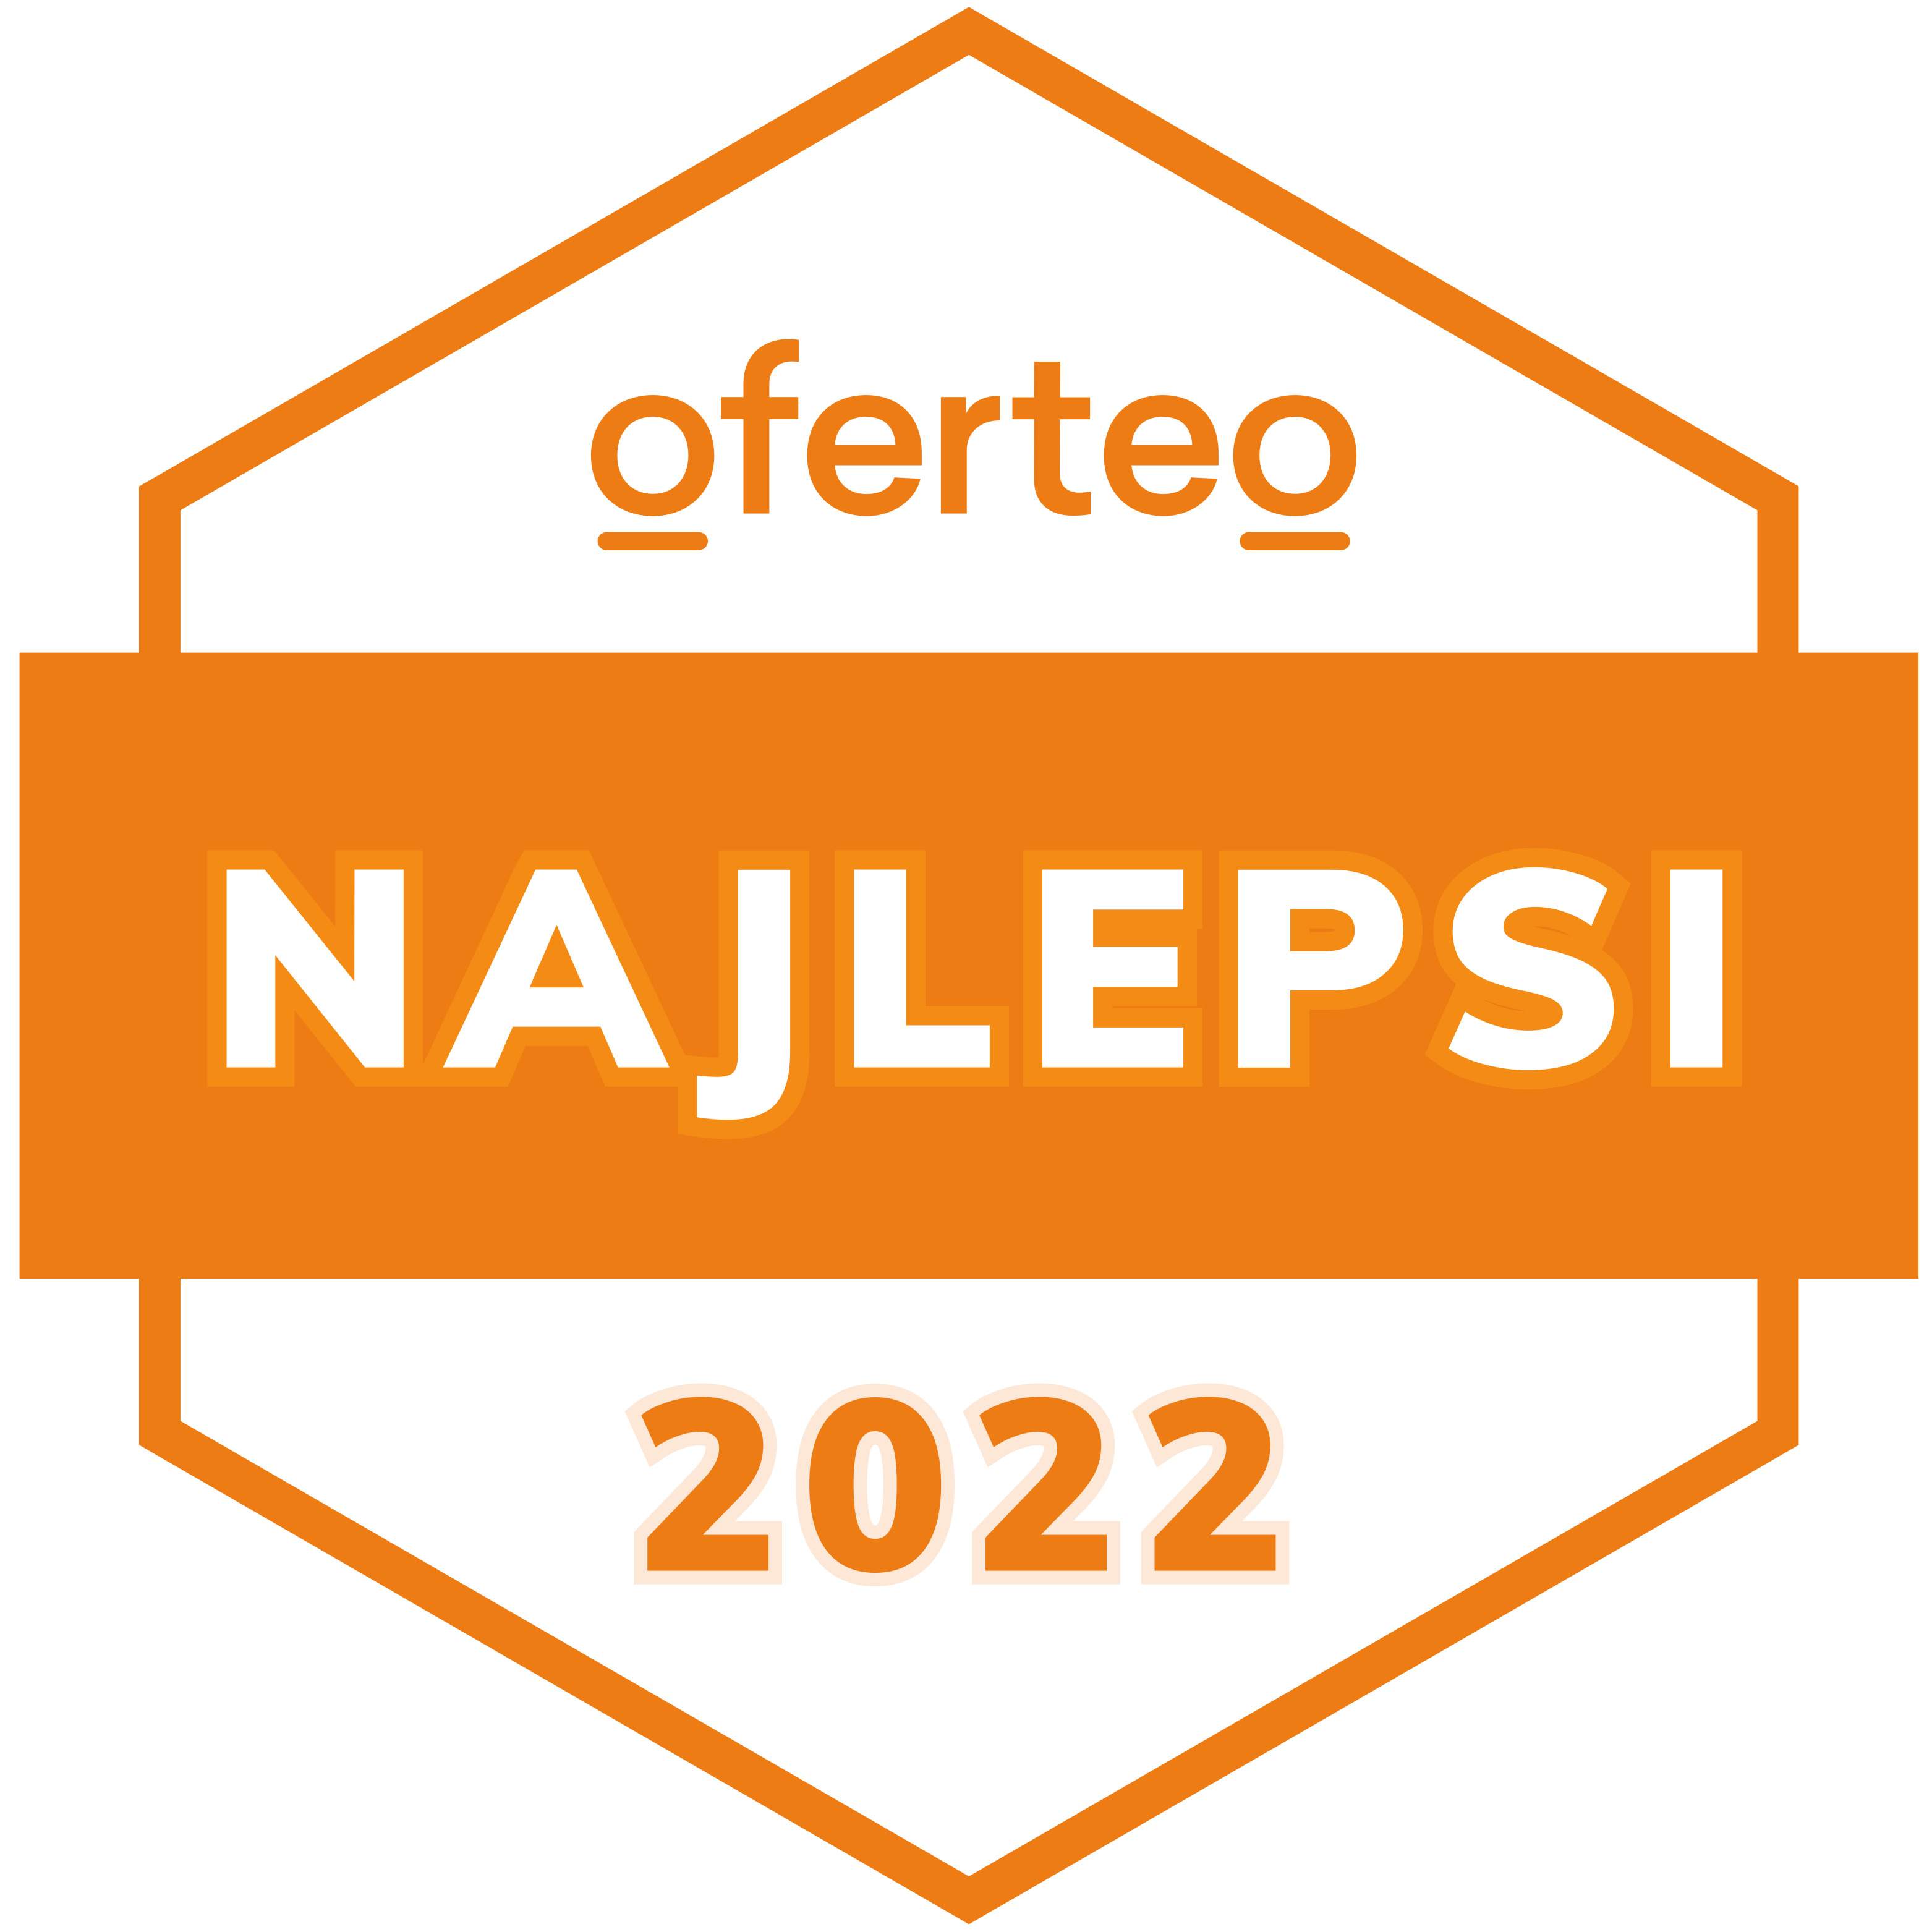 Odznaka Oferteo najlepsi 2022